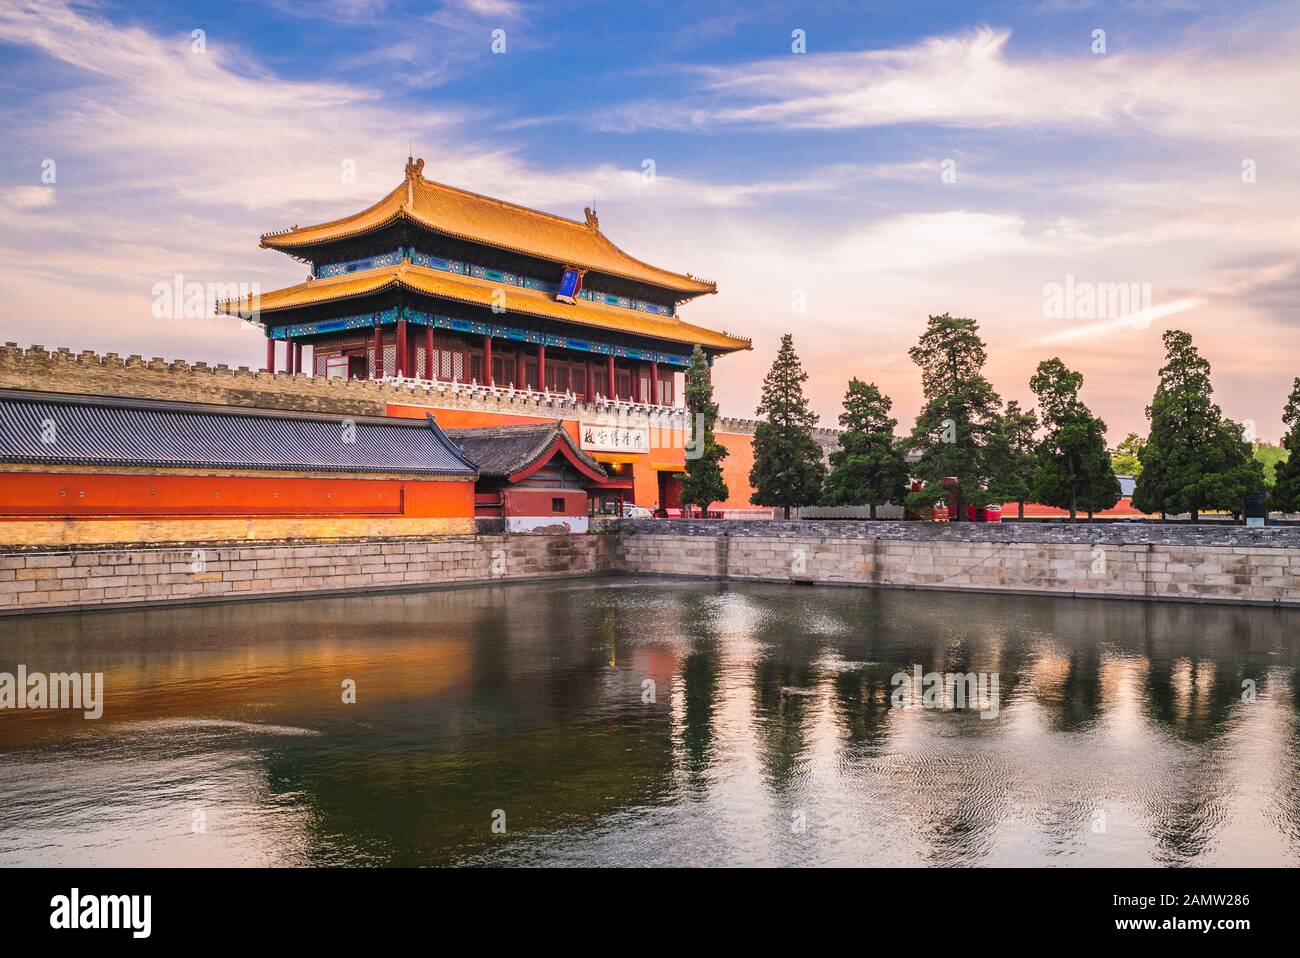 Das gottliche Tor Der verbotenen Stadt Peking: Die Übersetzung des chinesischen Textes sei "eine mögliche Pforte" und "Palastmuseum". Stockfoto